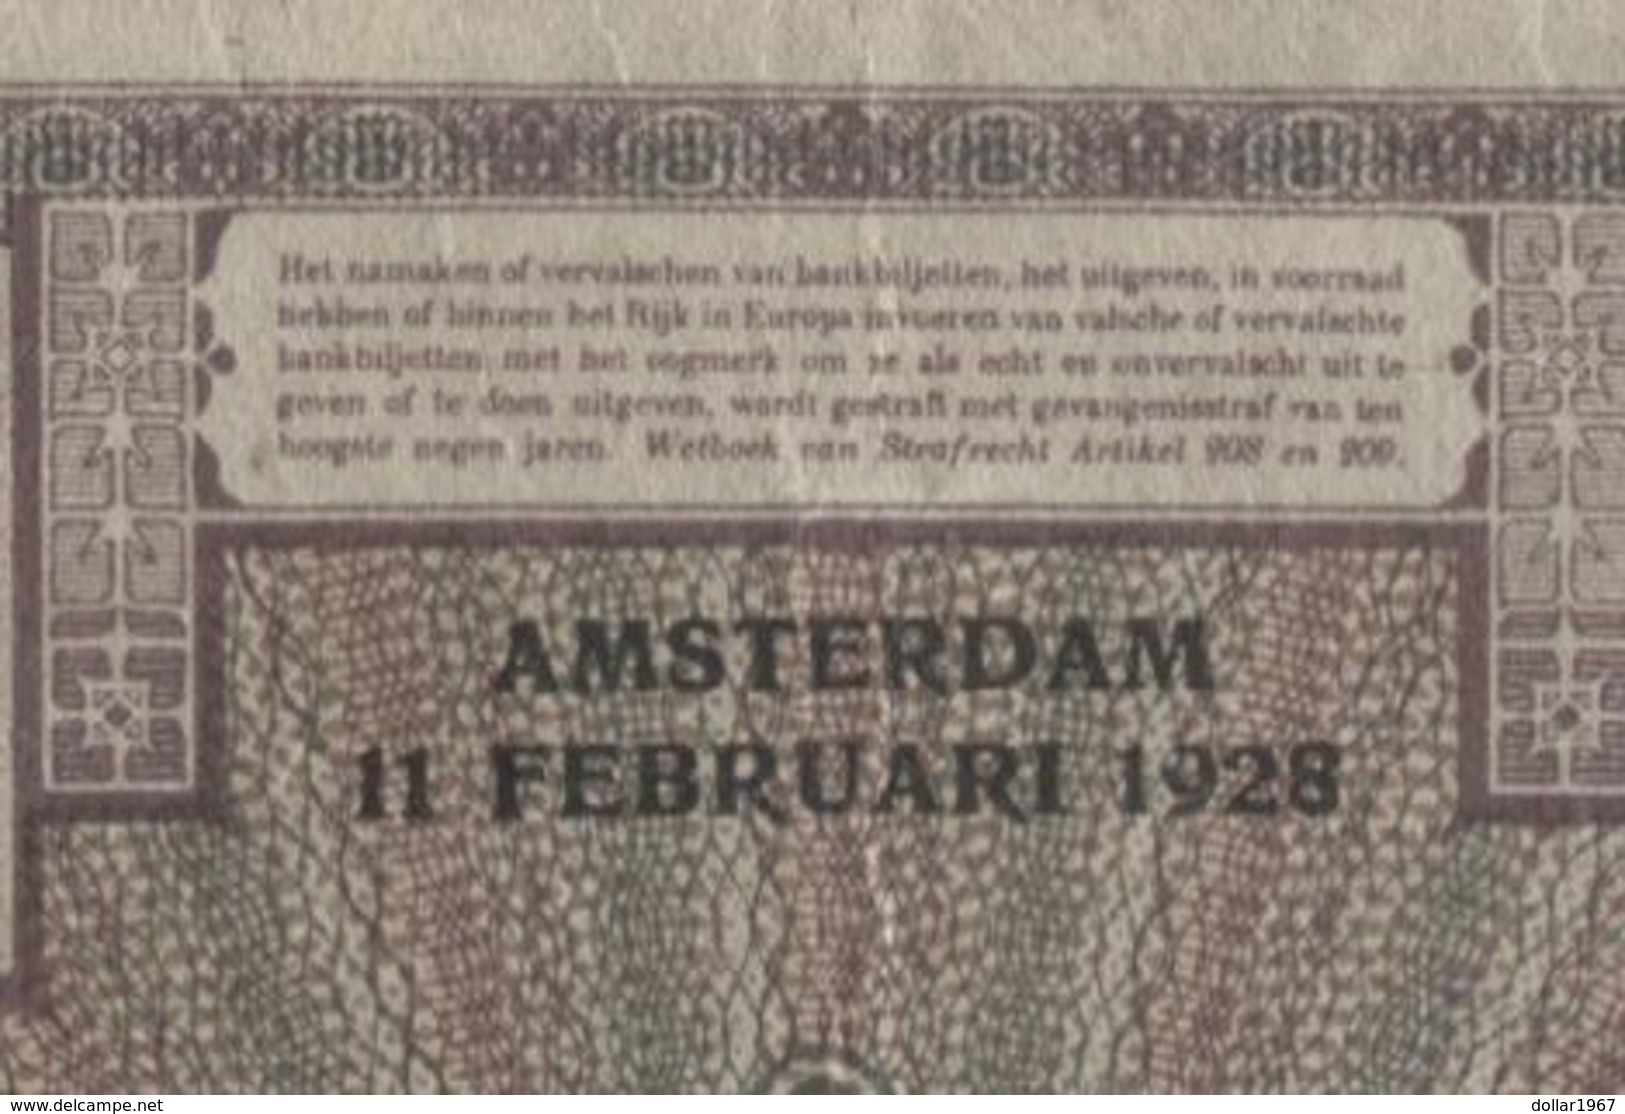 Netherlands  10 Gulden 1-3-1924 - 6-5-1932 - NR OK 056661 - 28 1c - See The 2 Scans For Condition.(Originalscan ) - 10 Florín Holandés (gulden)